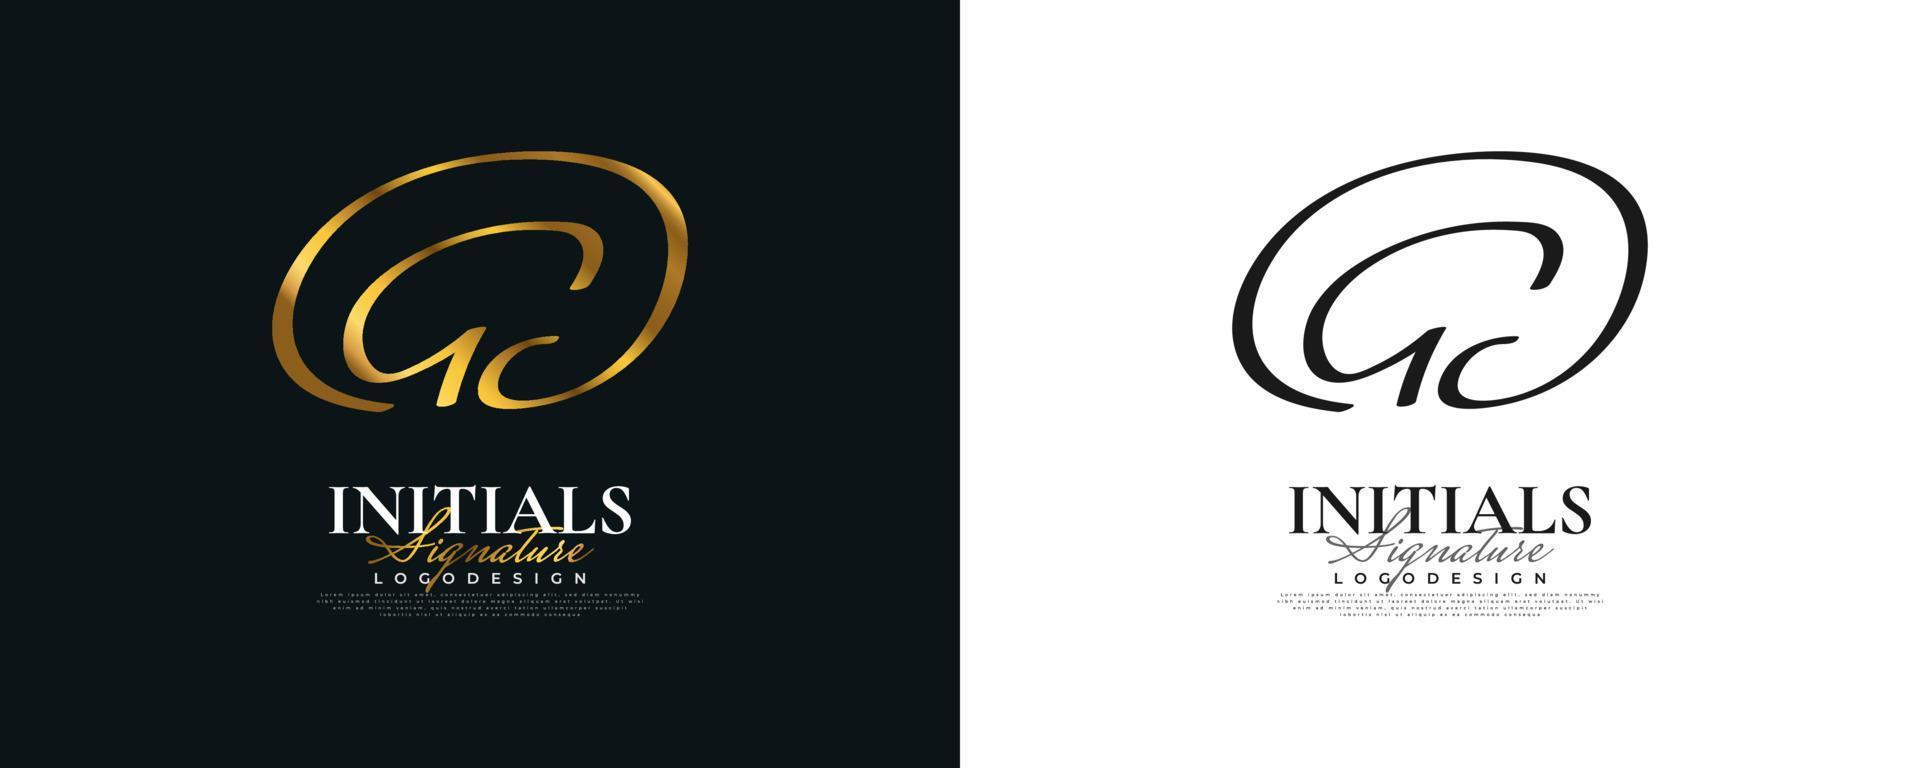 anfängliches g- und c-logo-design im eleganten goldhandschriftstil. gc-signaturlogo oder symbol für hochzeit, mode, schmuck, boutique und geschäftsidentität vektor